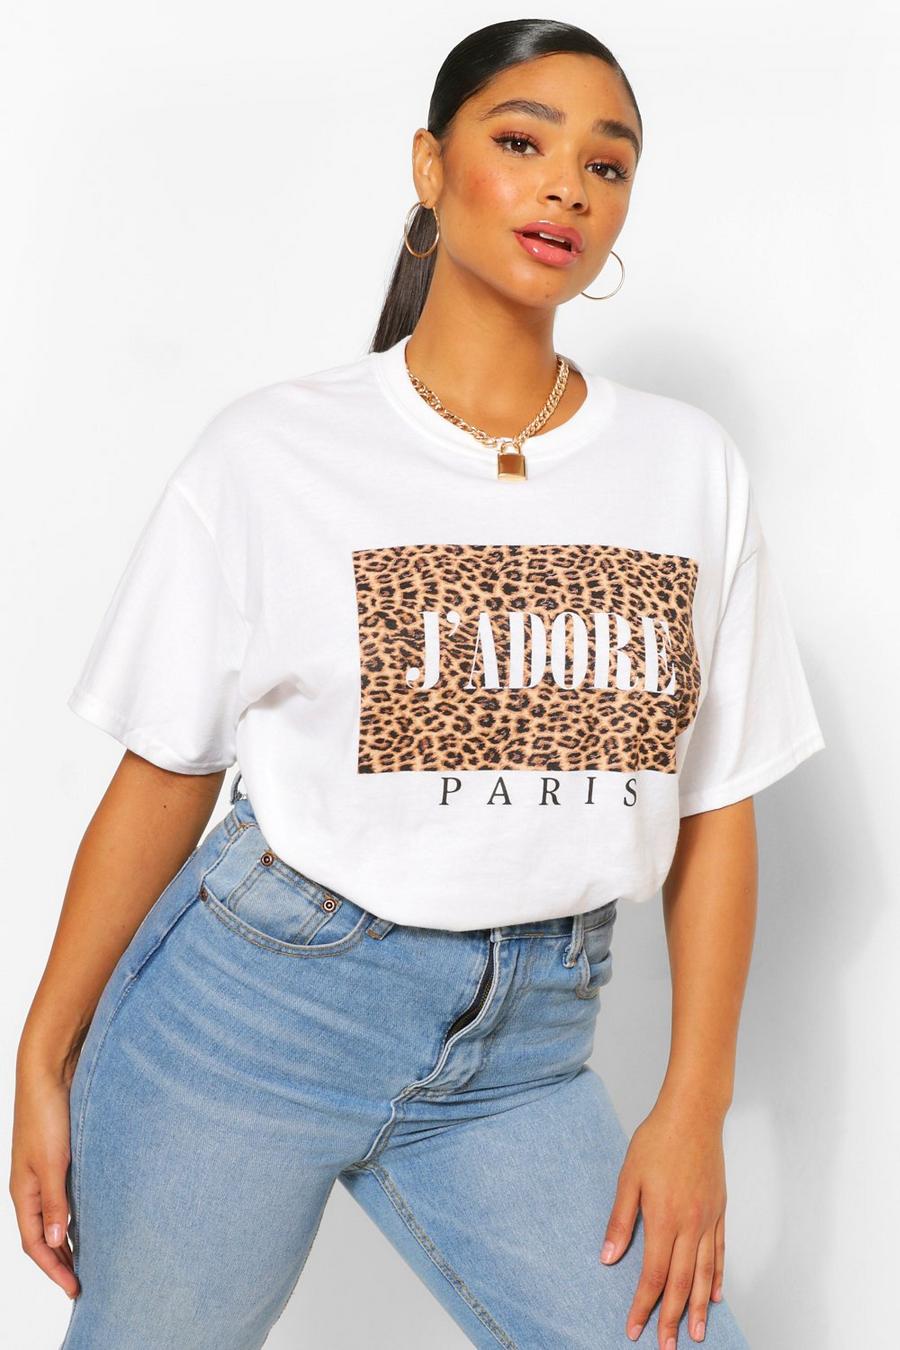 Plus Leopardenprint T-Shirt mit J'Adore Slogan, Weiß white